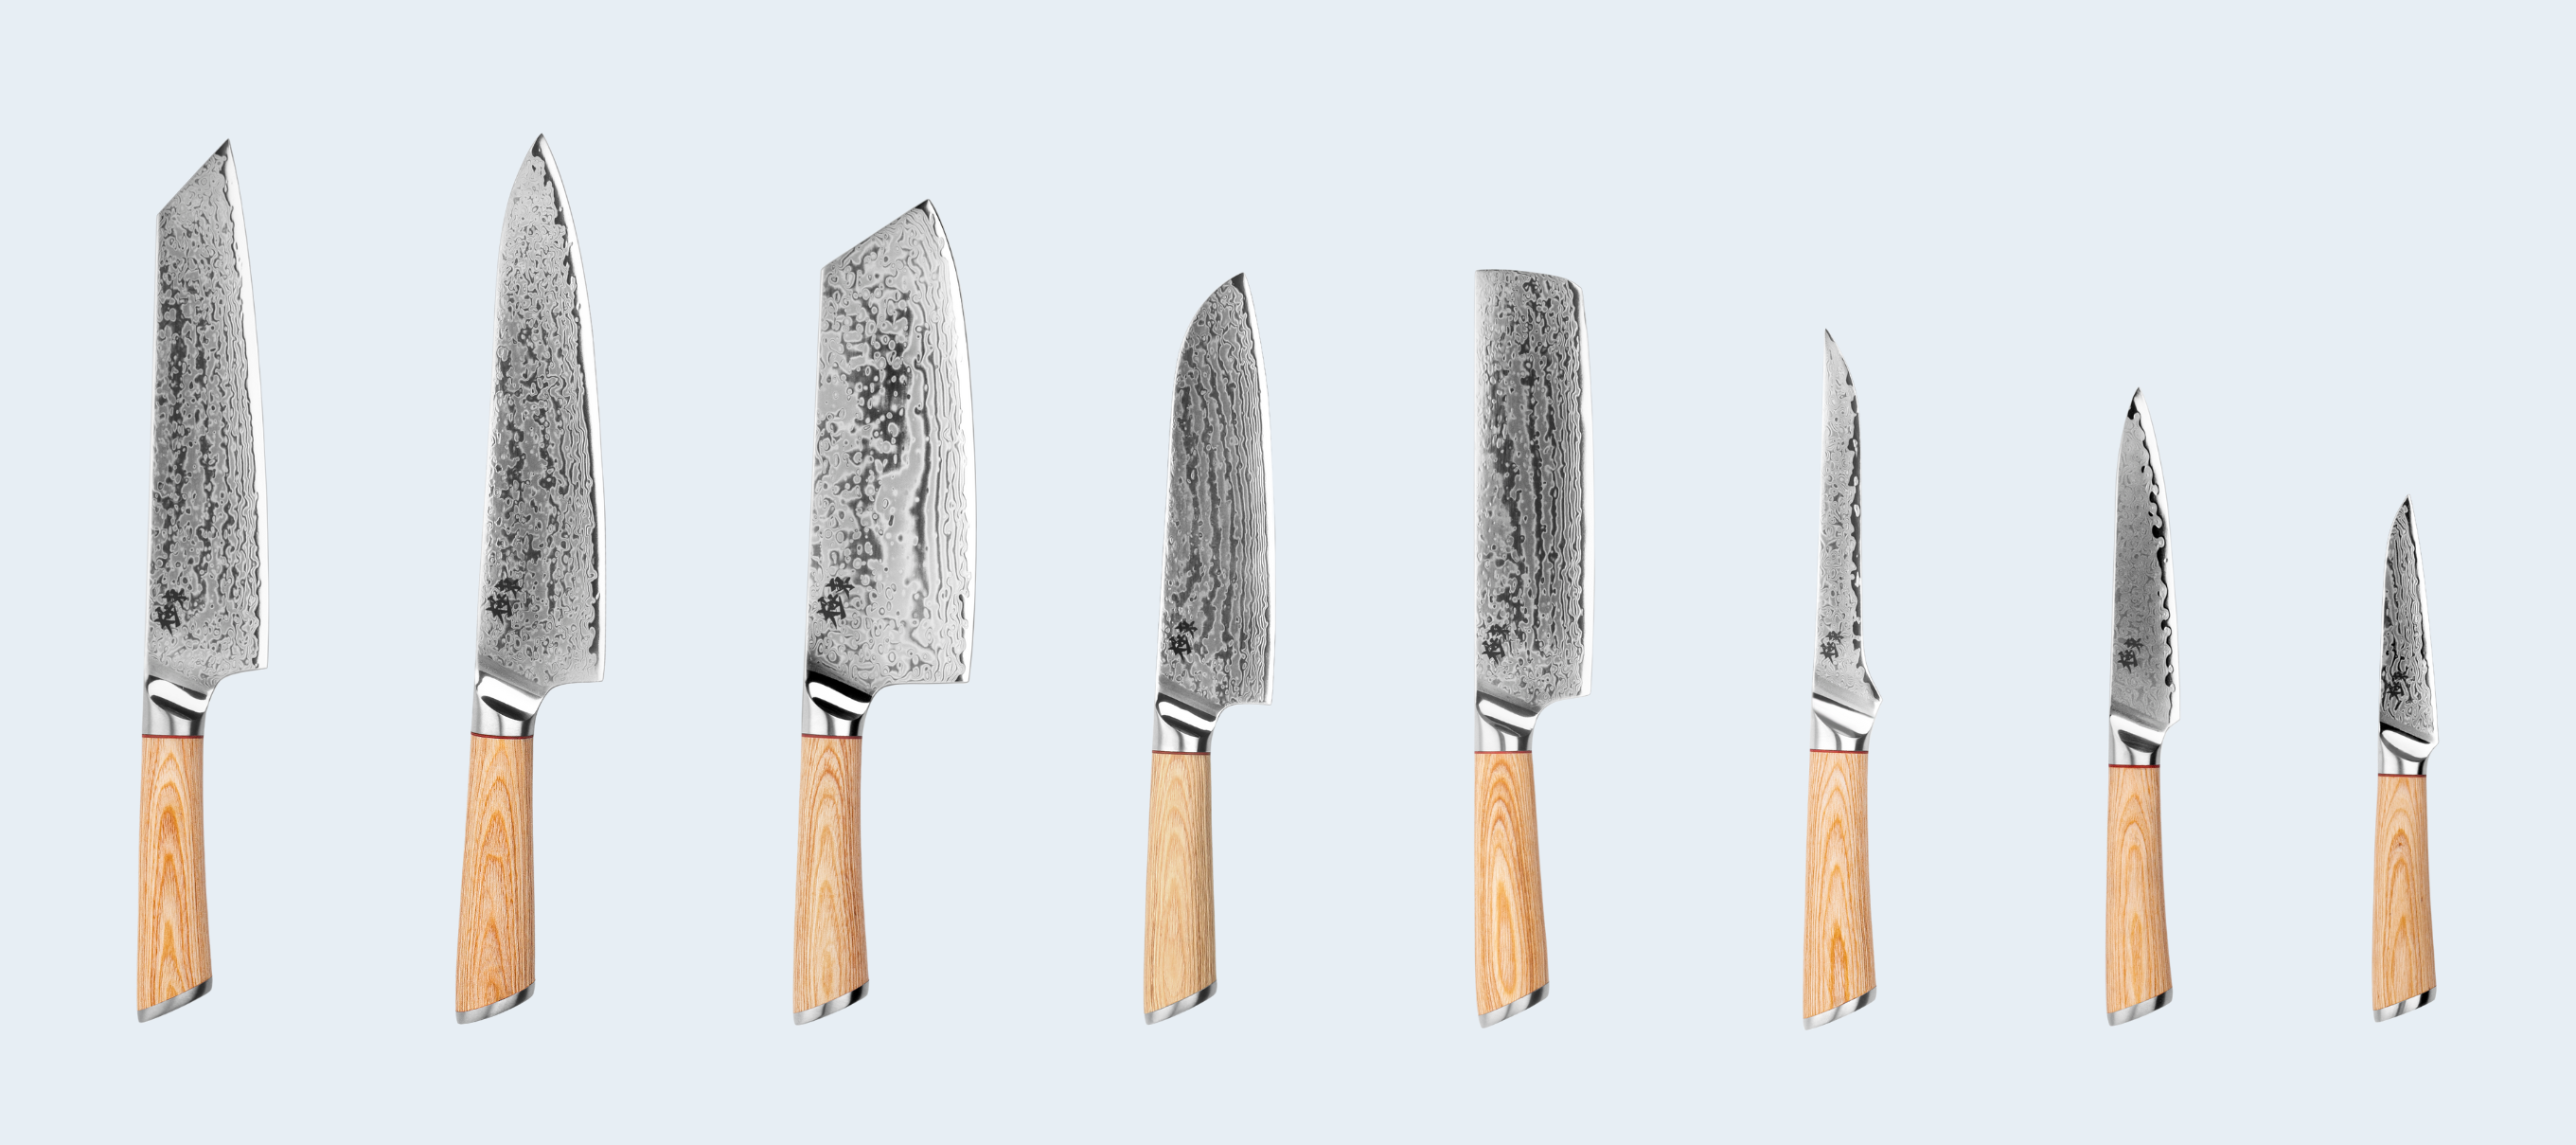 Quel couteau japonais pour quelle utilisation ?